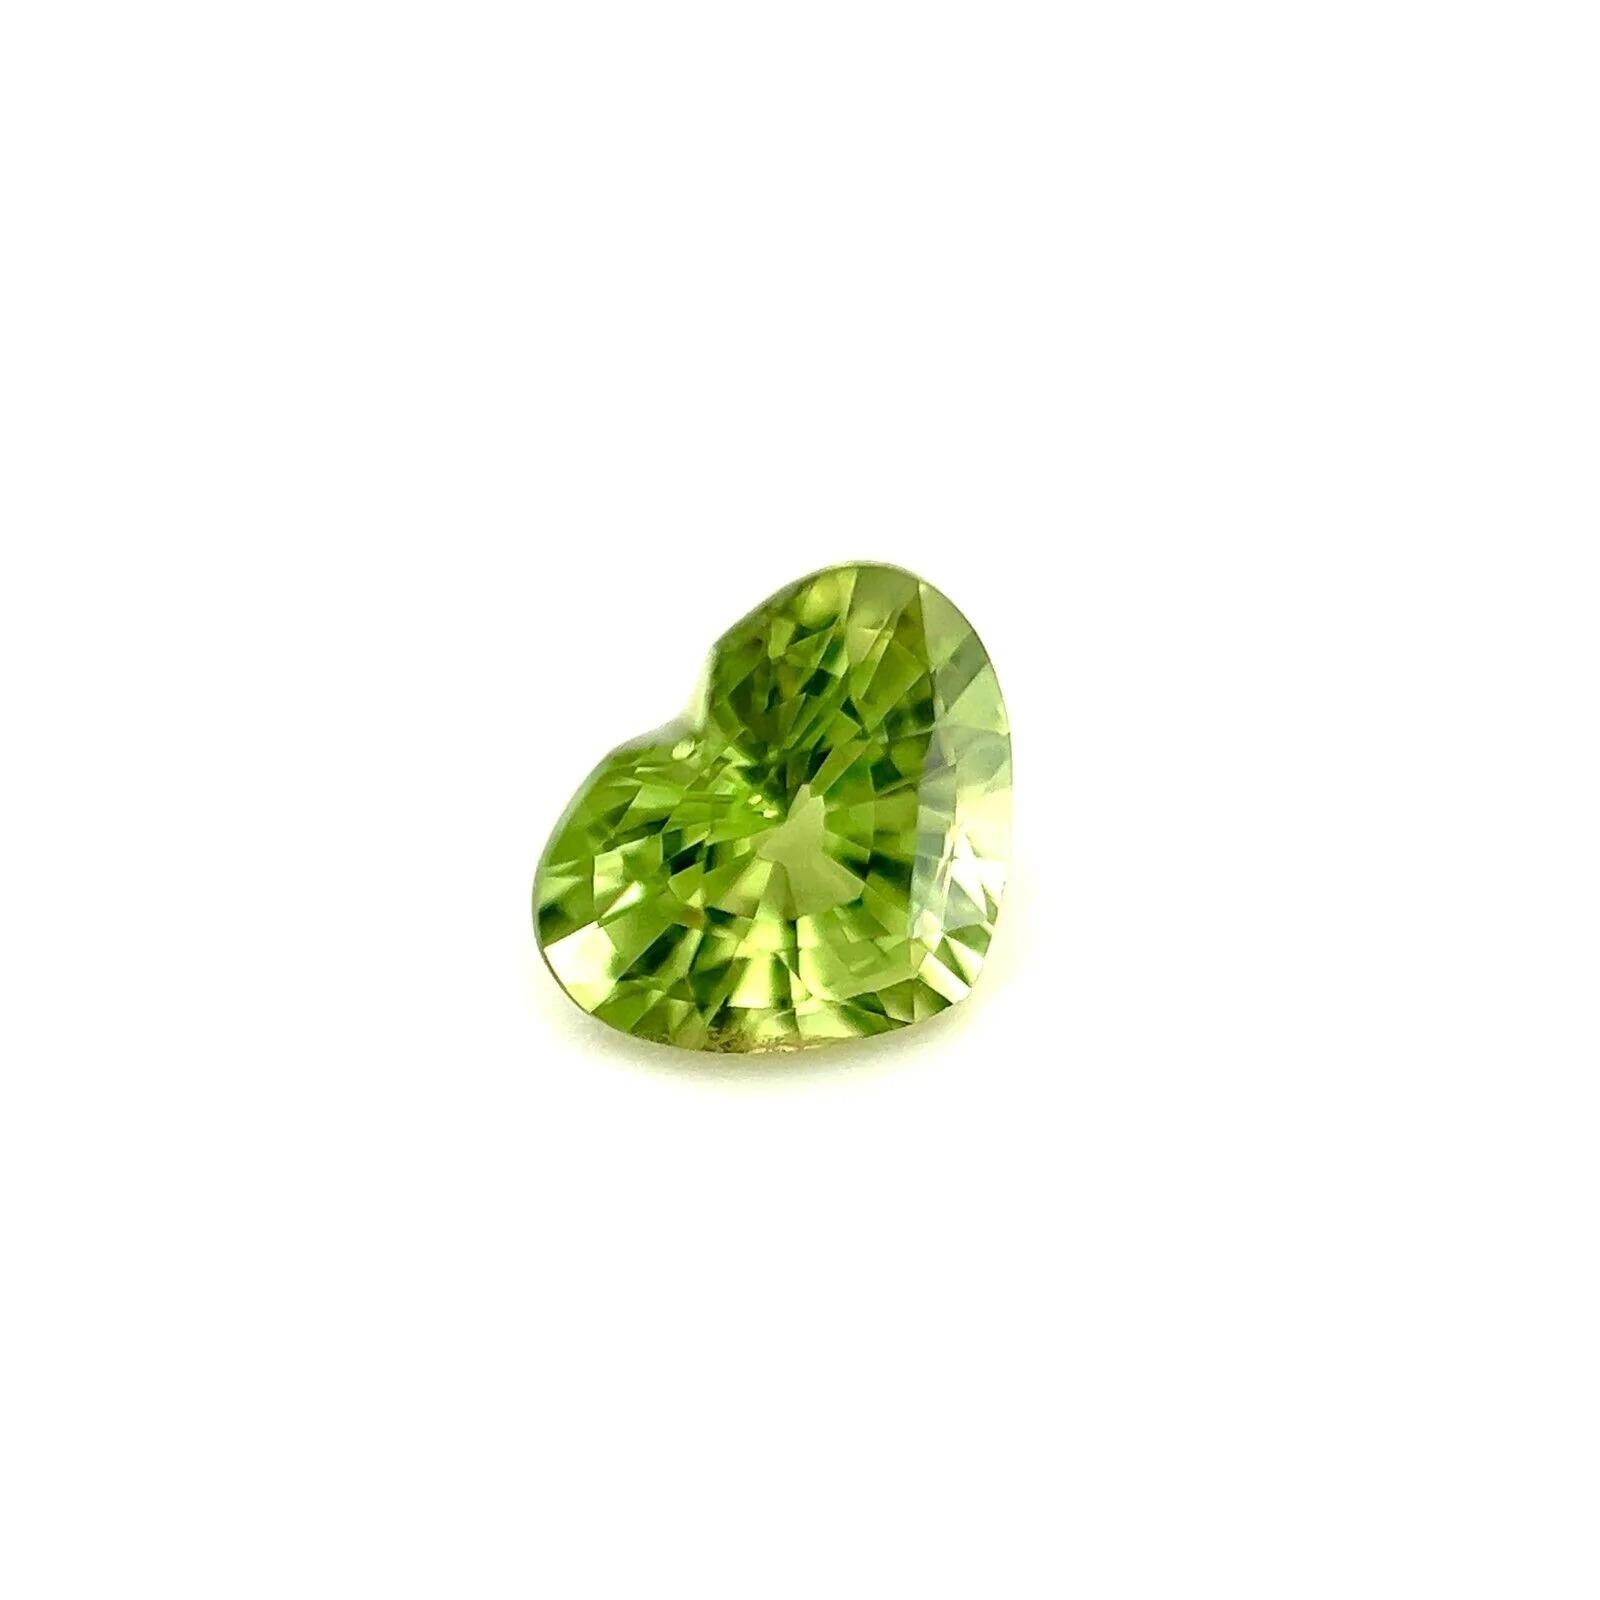 Saphir fin de couleur vert vif 0,79ct pierre précieuse en vrac taille cœur 6x4,8mm VVS

Saphir vert naturel taillé en cœur. 
0.79 Carat avec une belle et unique couleur verte. Très rare et stupéfiant à voir. Elle a une très bonne clarté, une pierre